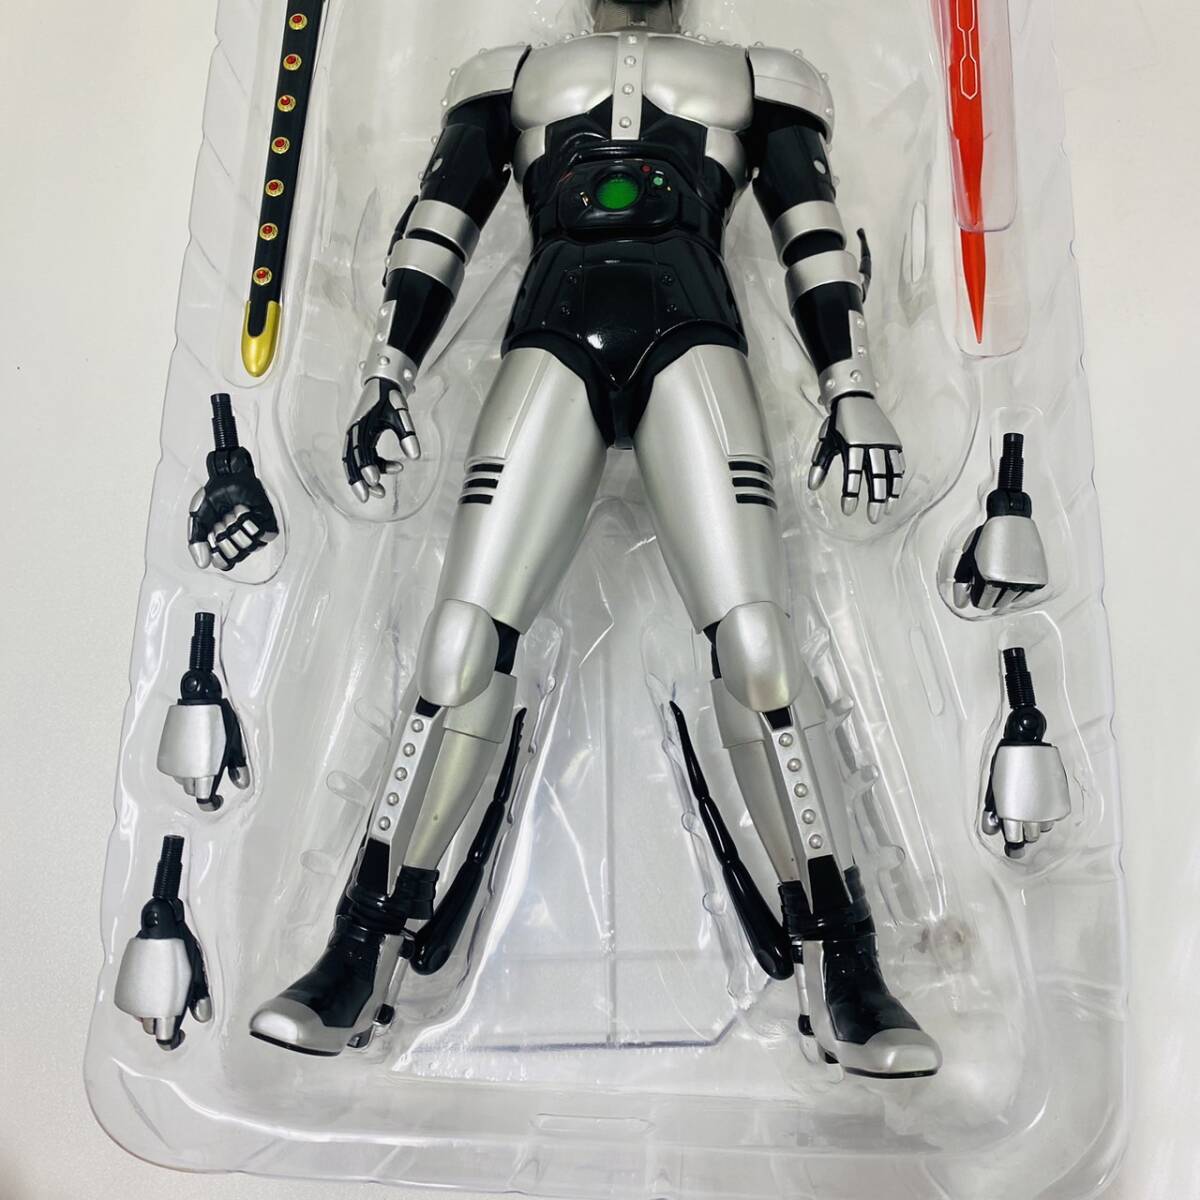 16220/ Kamen Rider BLACK RX тень moon (ver.2.0) Deluxe модель 2016 вне с коробкой спецэффекты фигурка Kamen Rider meti com игрушка 